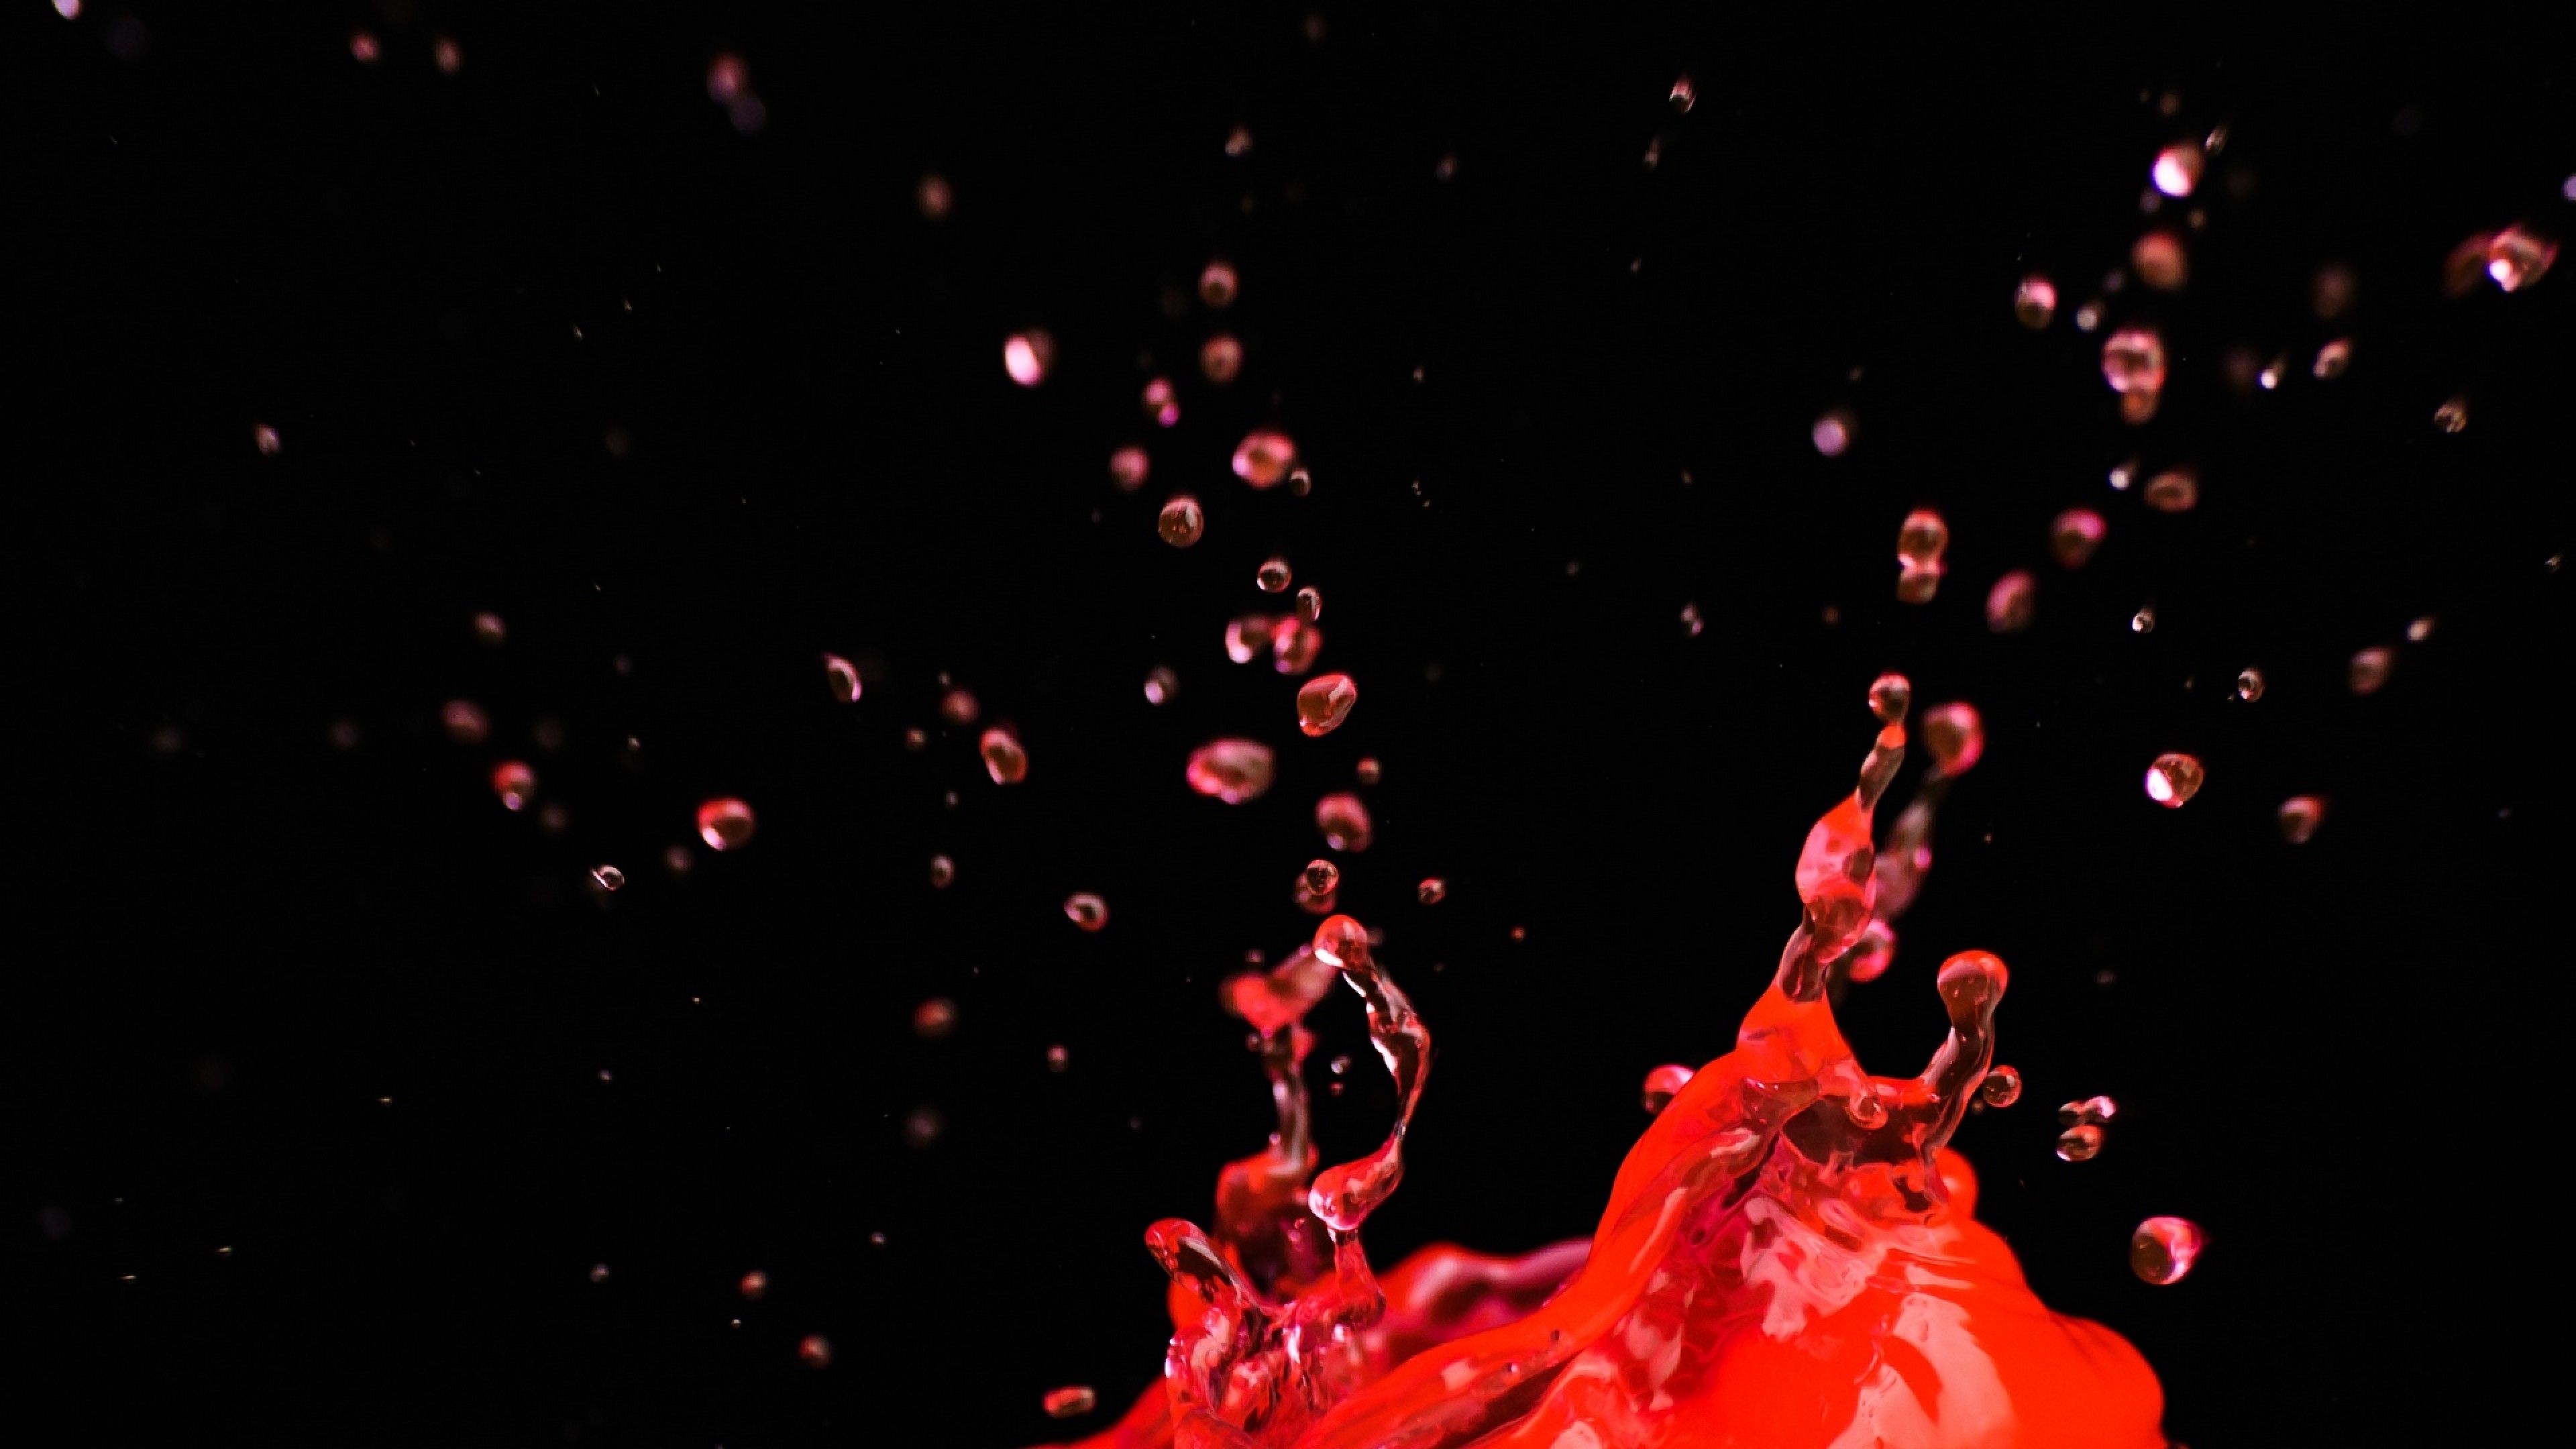 Red liquid splash HD Wallpaper 4K Ultra HD